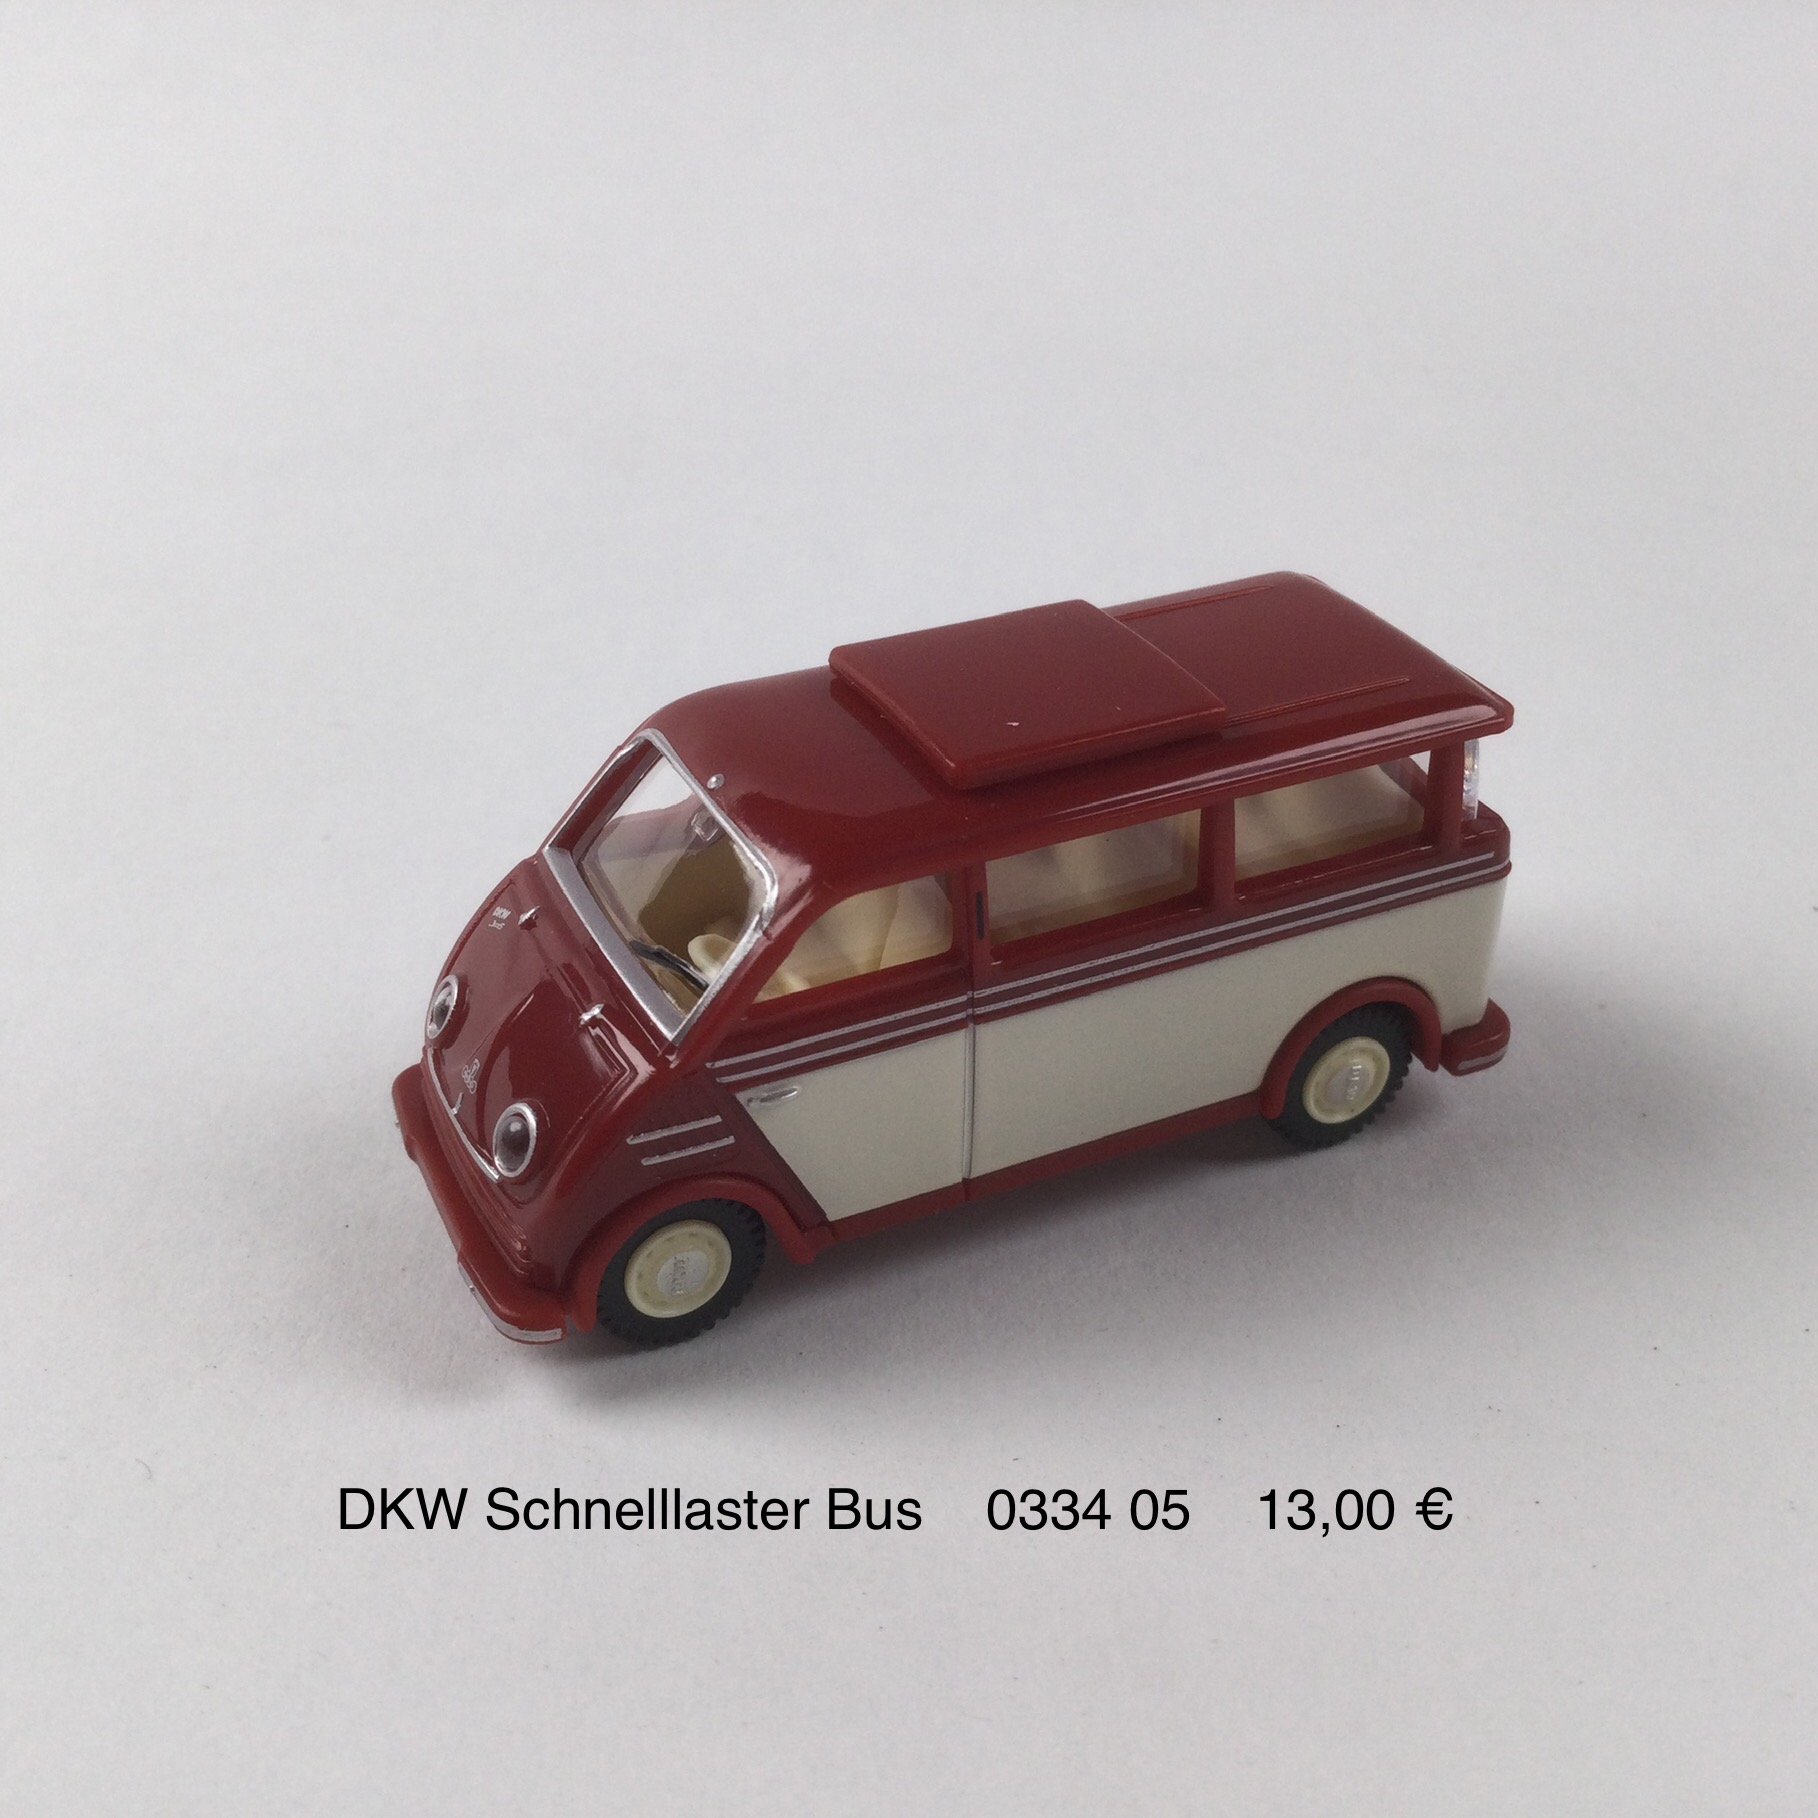 DKW Schnelllaster Bus